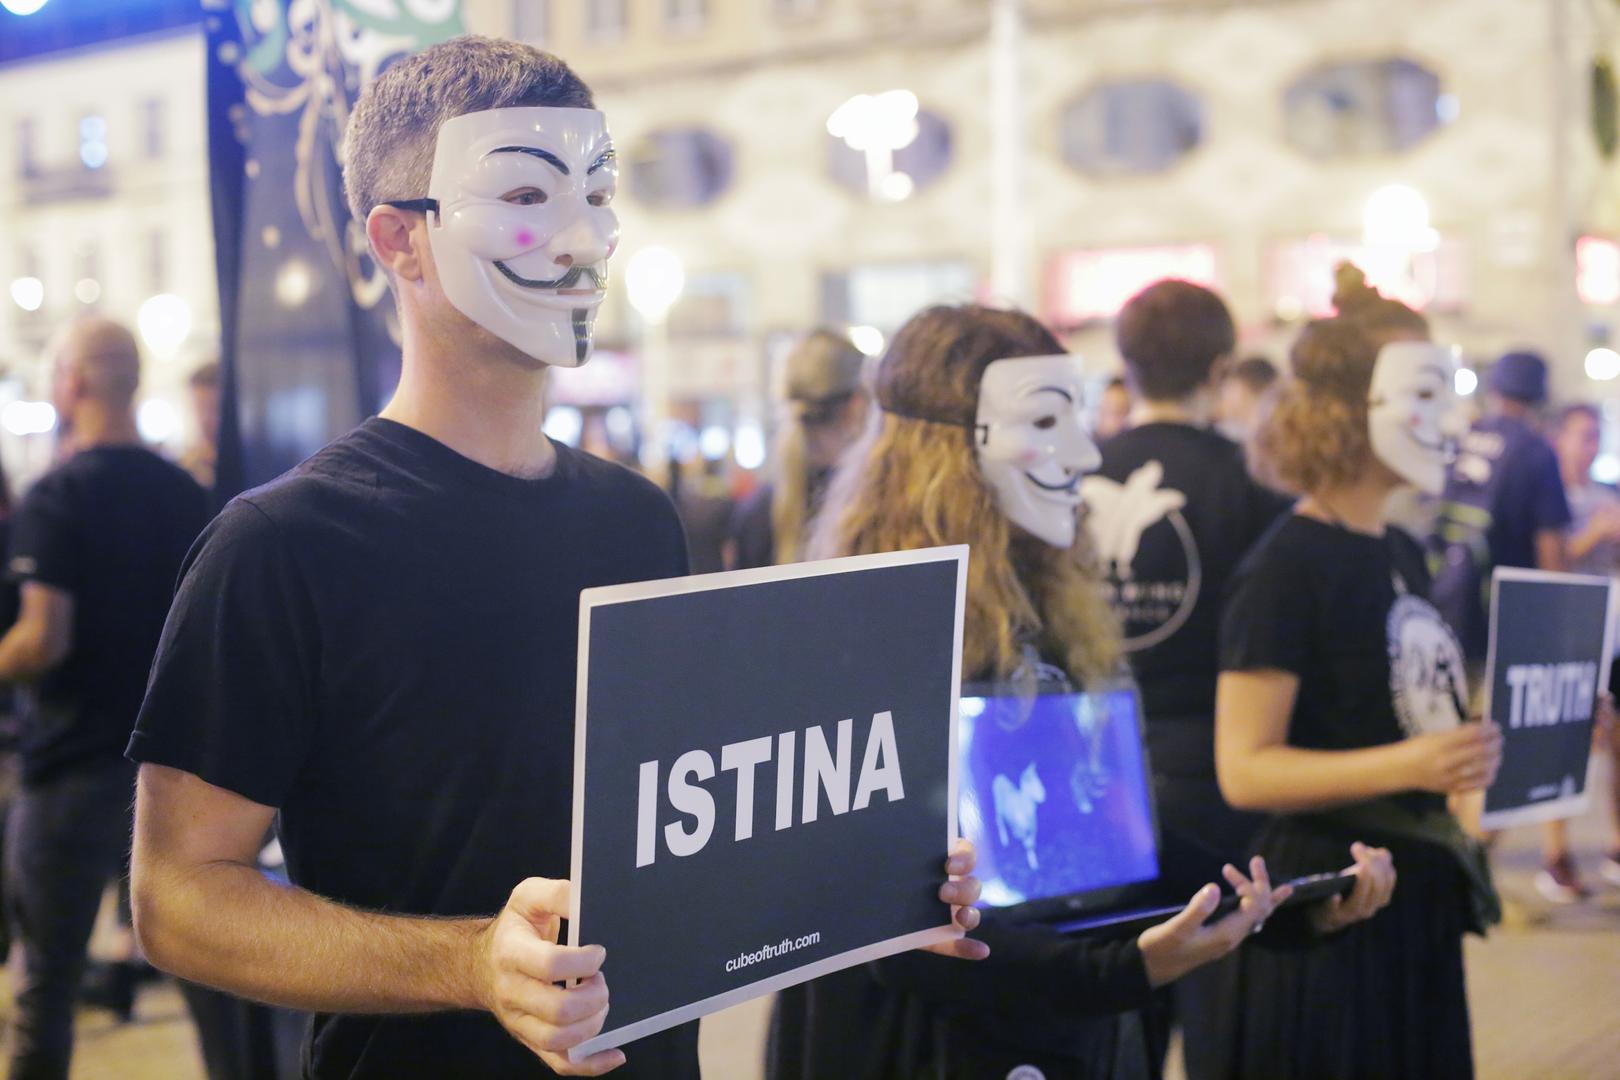 U sklopu ZeGevege festivala na Trgu bana Josipa Jelačića u Zagrebu održan je mirni prosvjed za prava životinja, prva regionalna Kocka istine (Cube of truth).